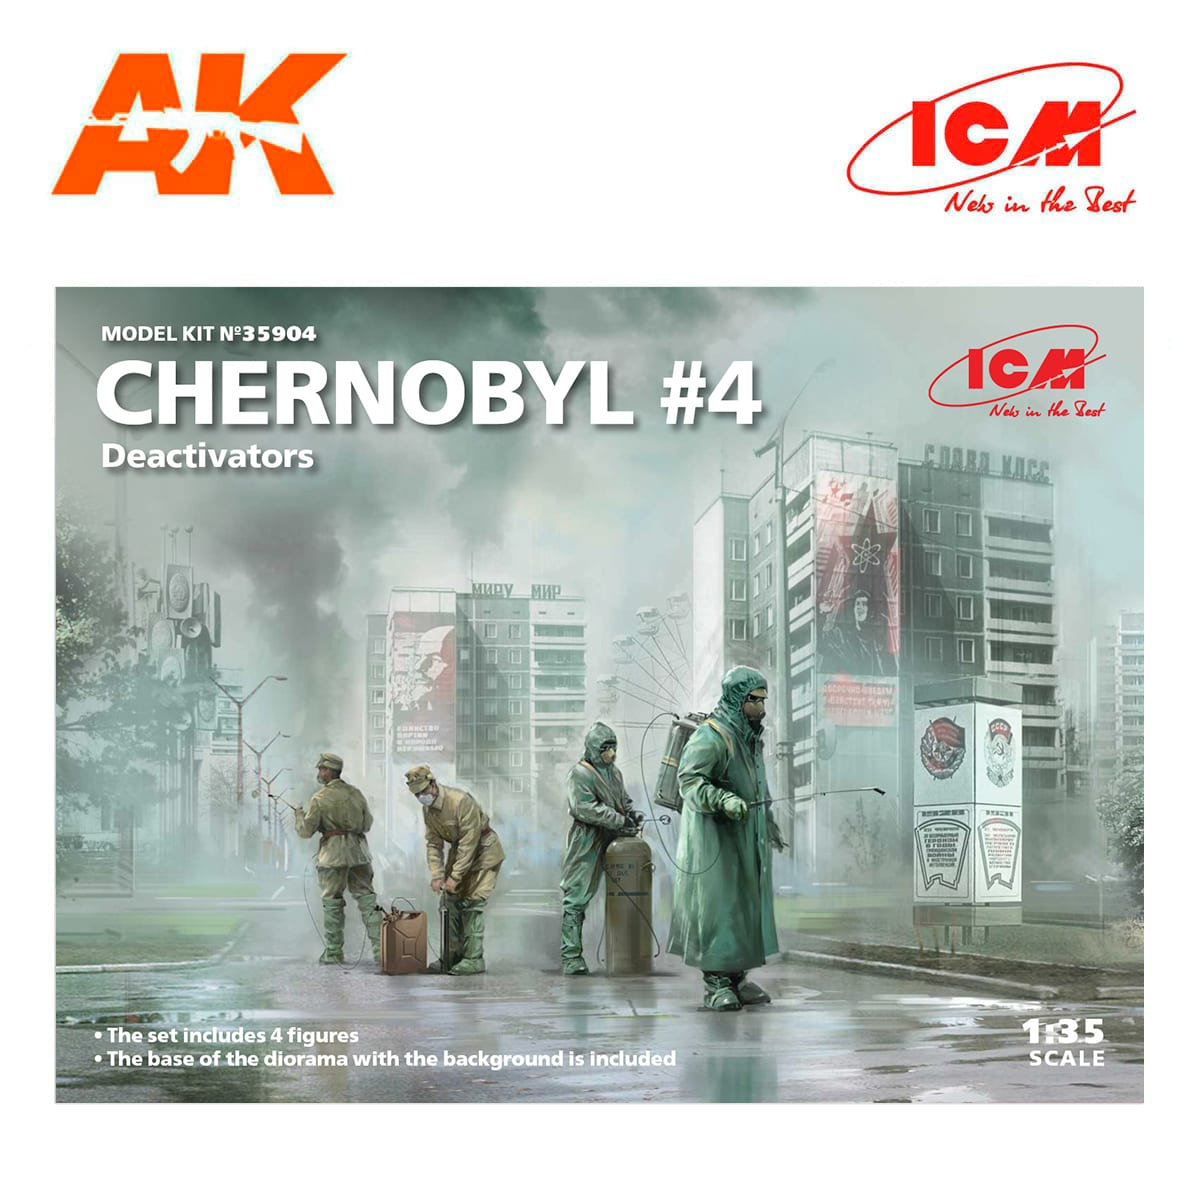 Chernobyl#4. Deactivators (4 figures) 1/35